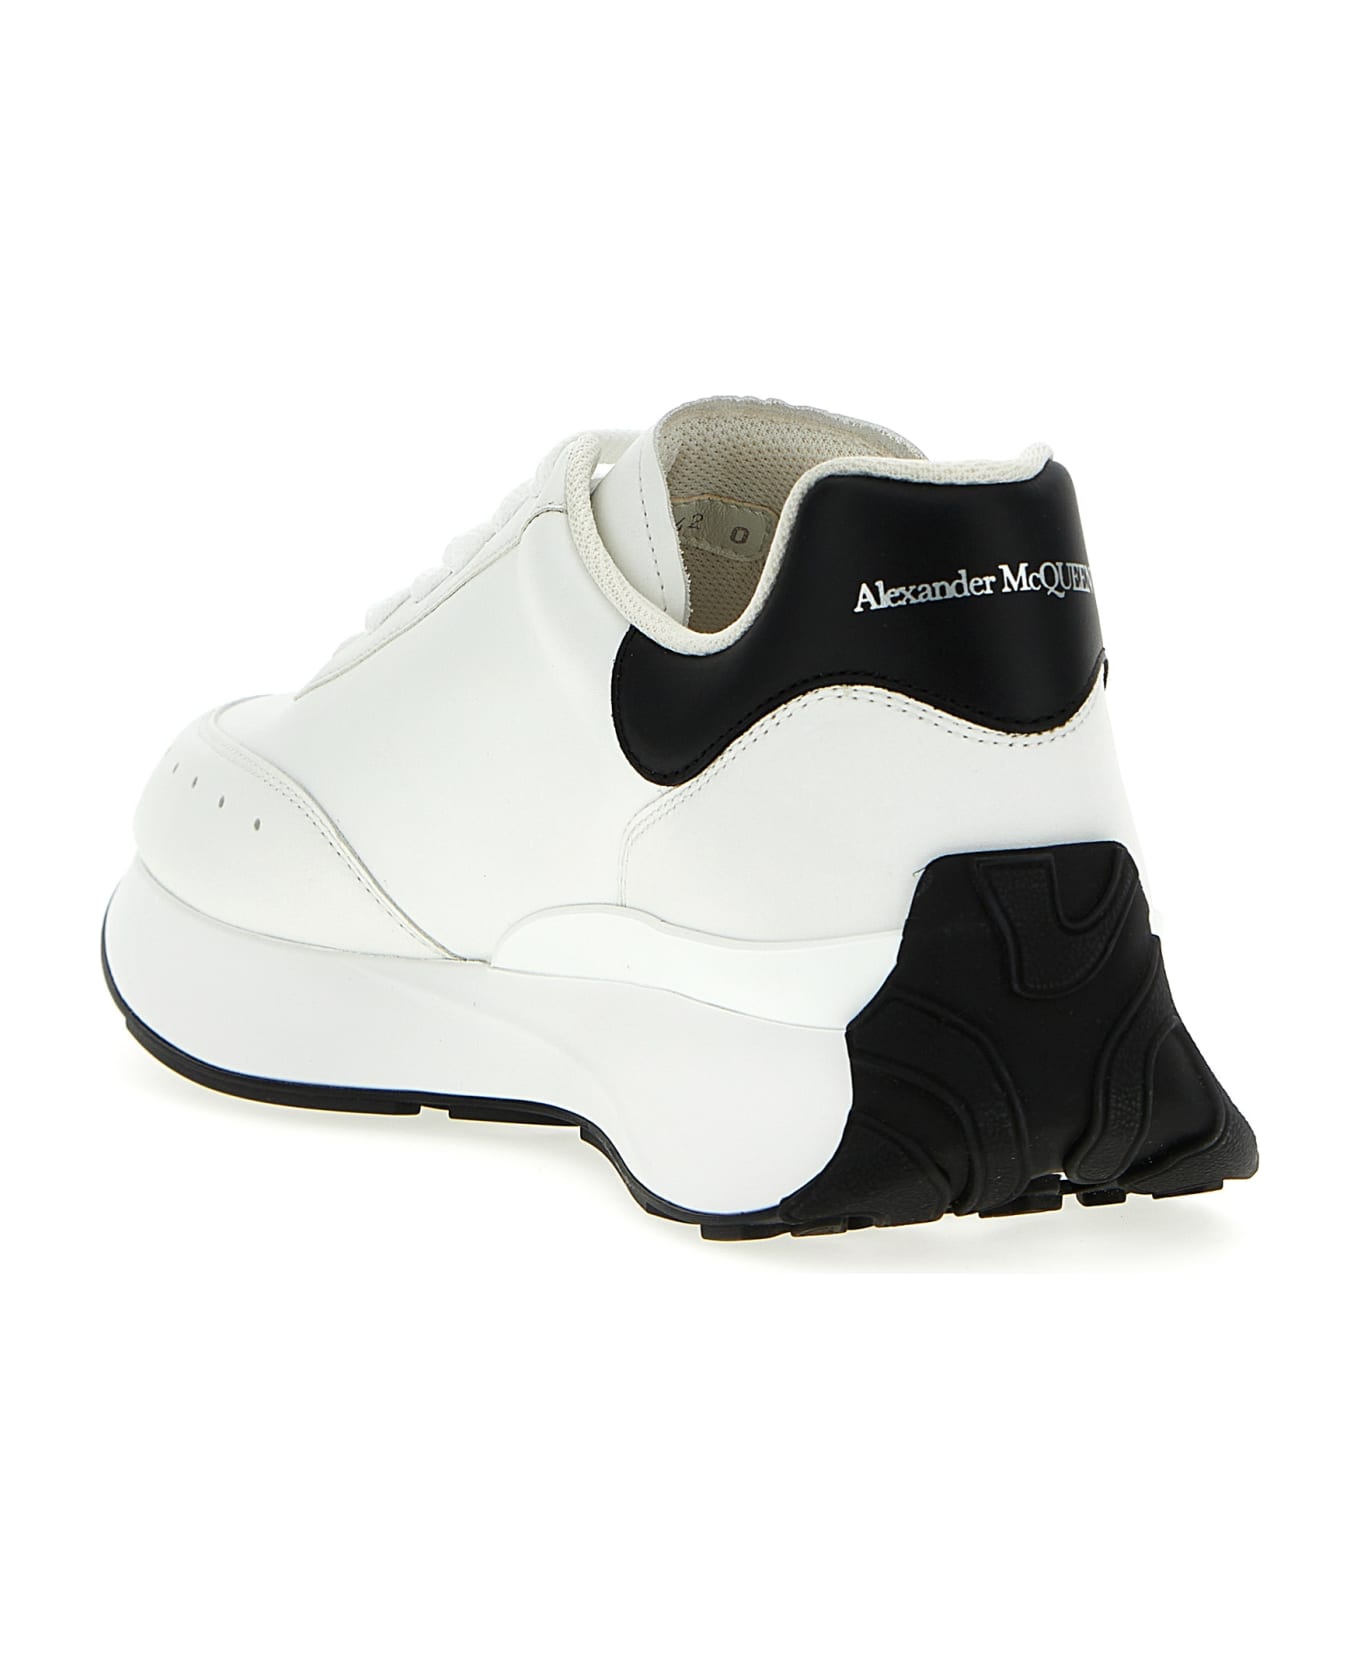 Alexander McQueen 'sprint Runner' Sneakers - White/Black